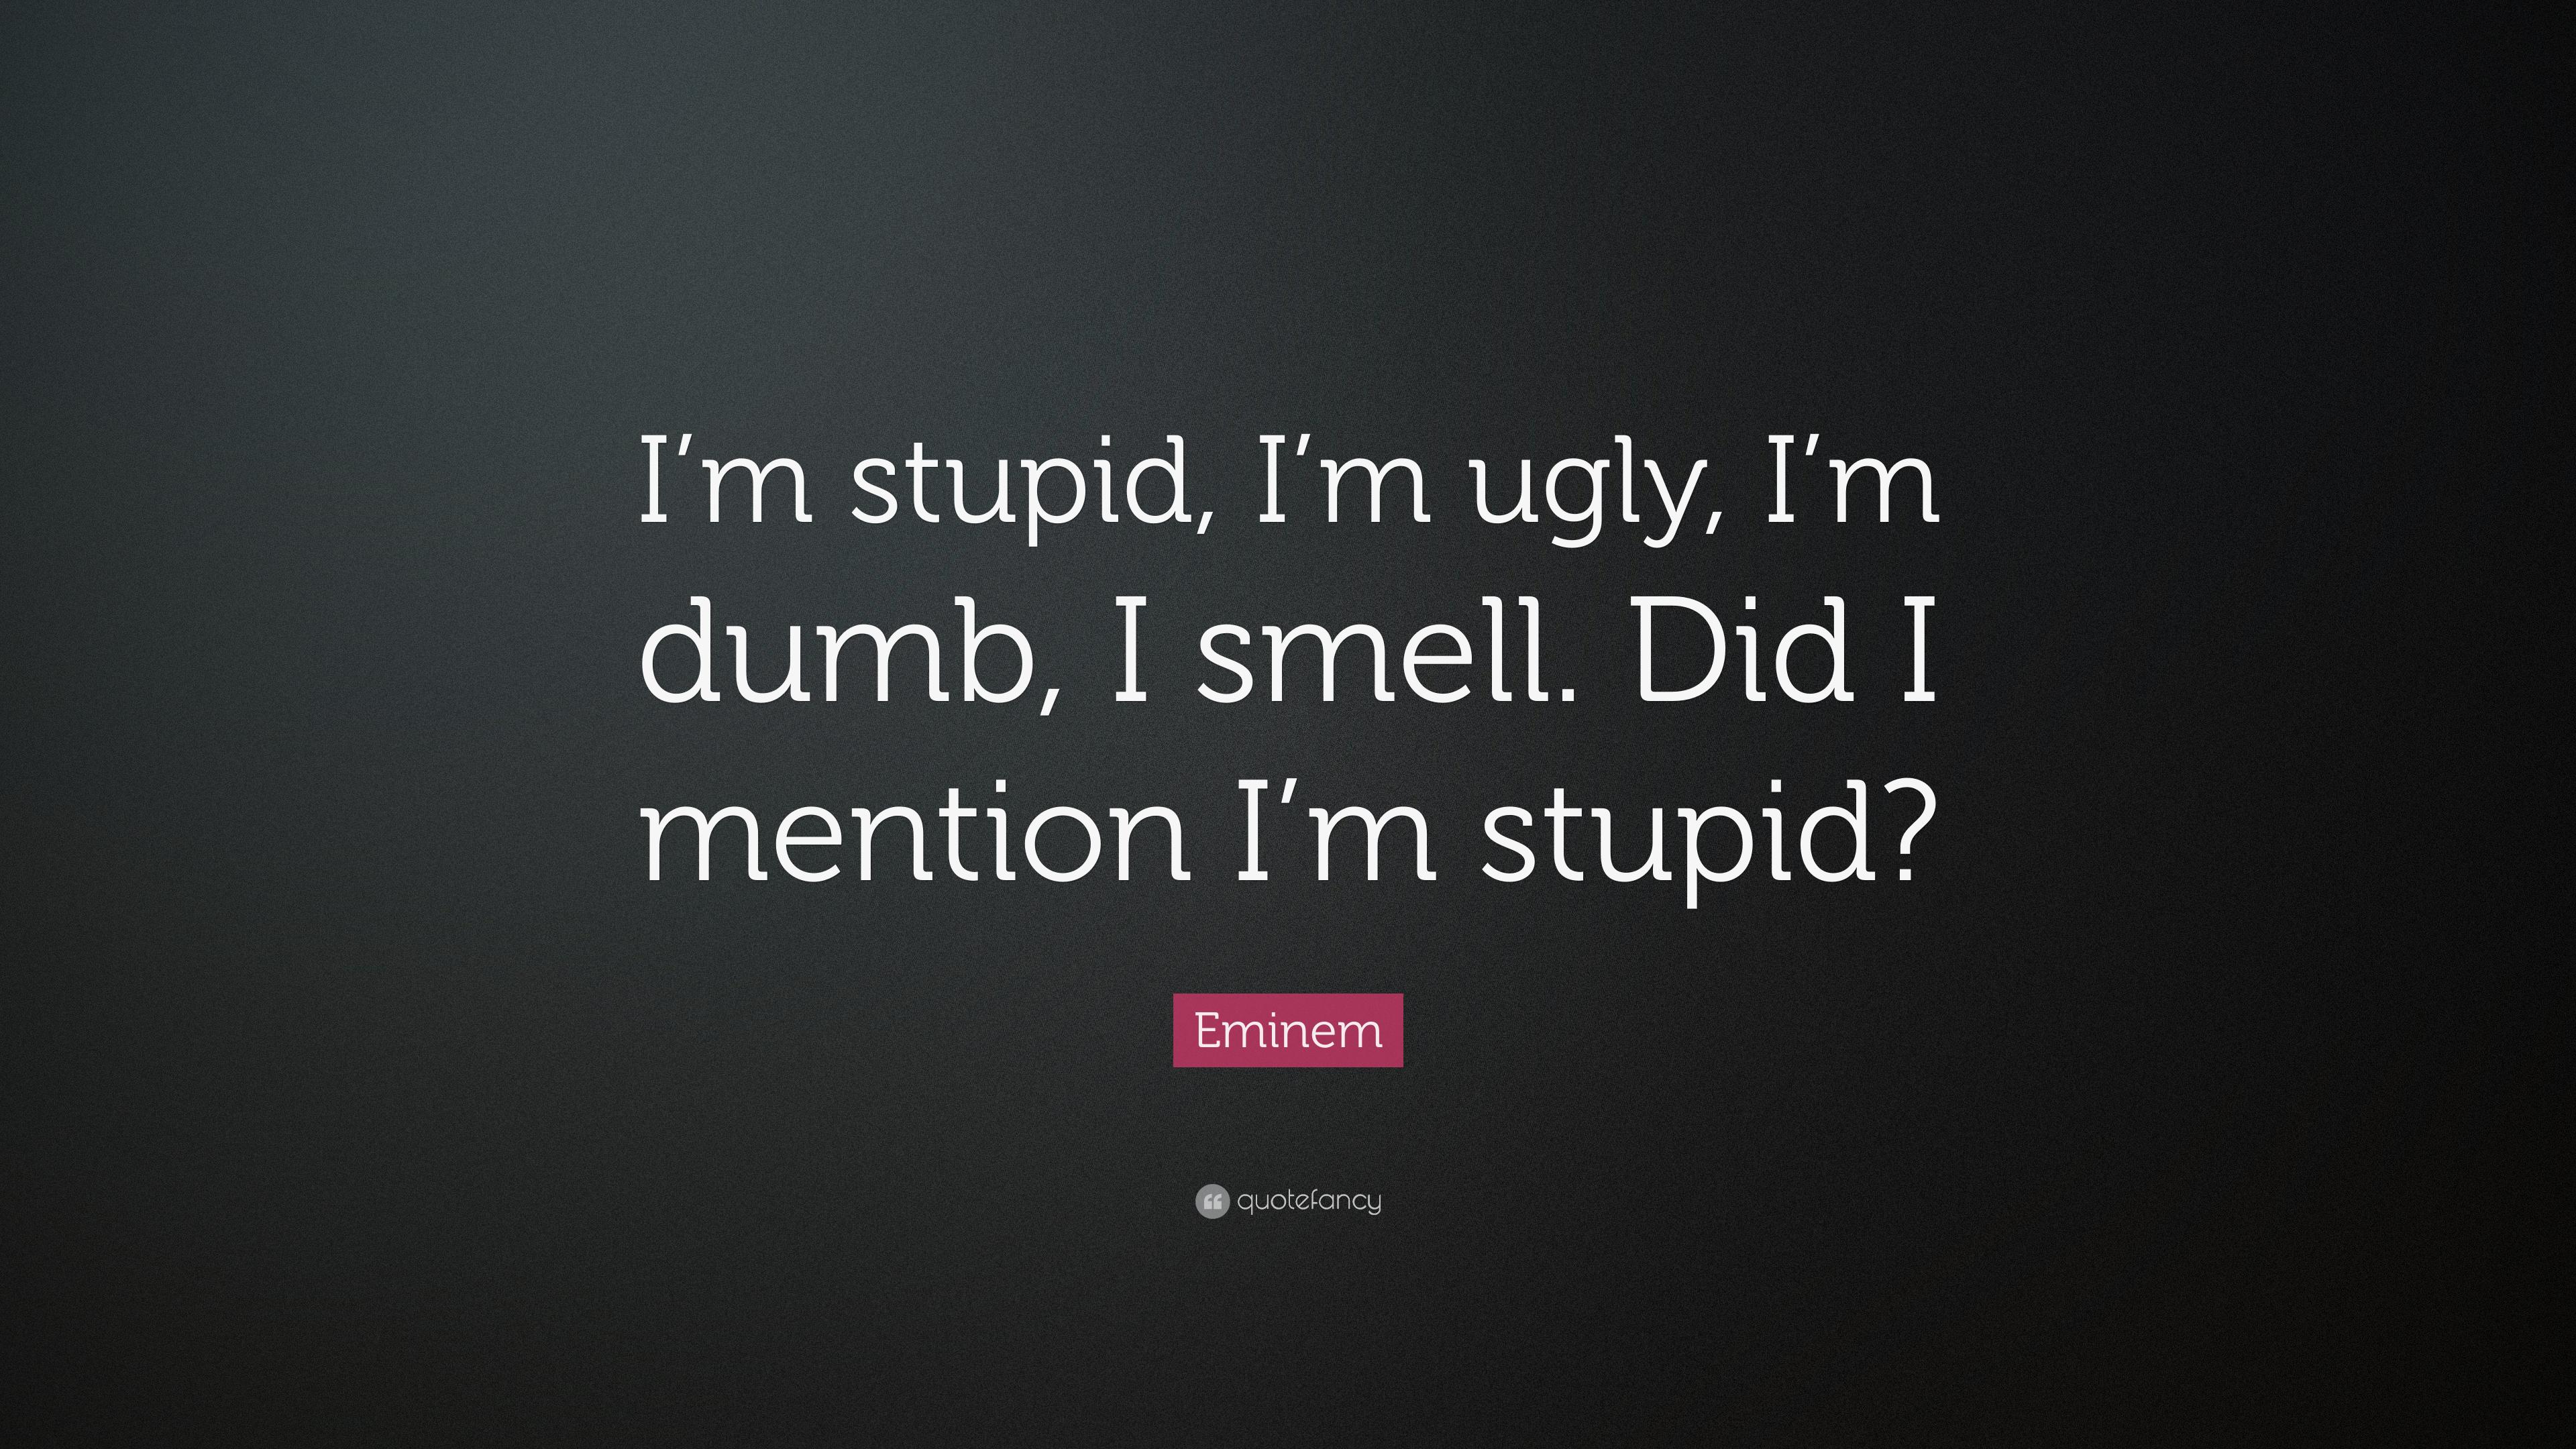 Eminem Quote: “I'm stupid, I'm ugly, I'm dumb, I smell. Did